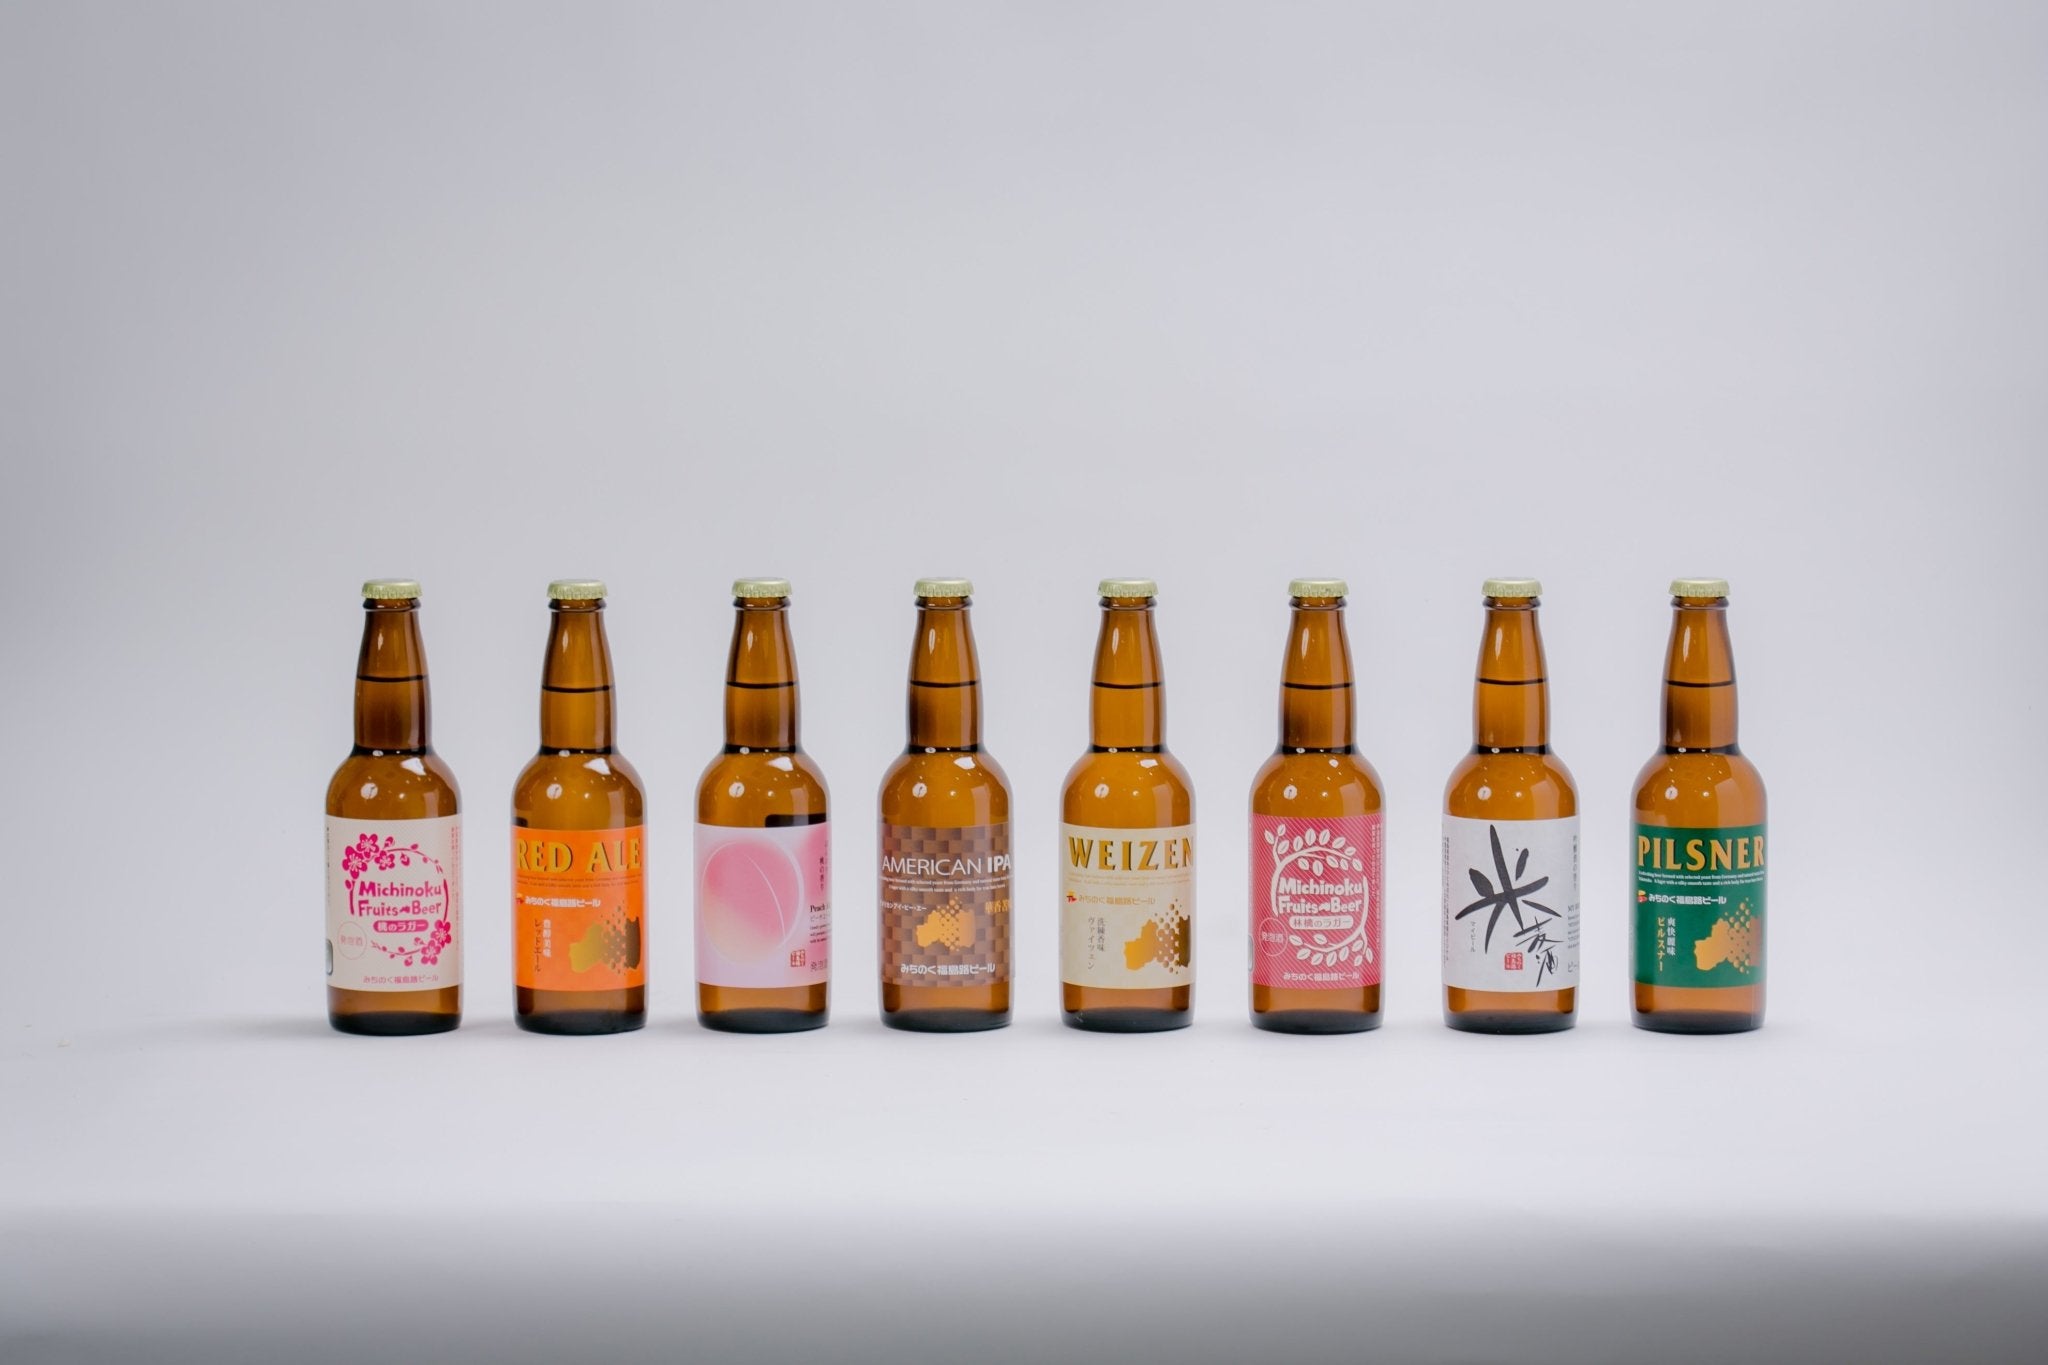 みちのく福島路ビール飲み比べ12本セット - ふくしま市場｜福島県産品オンラインストア